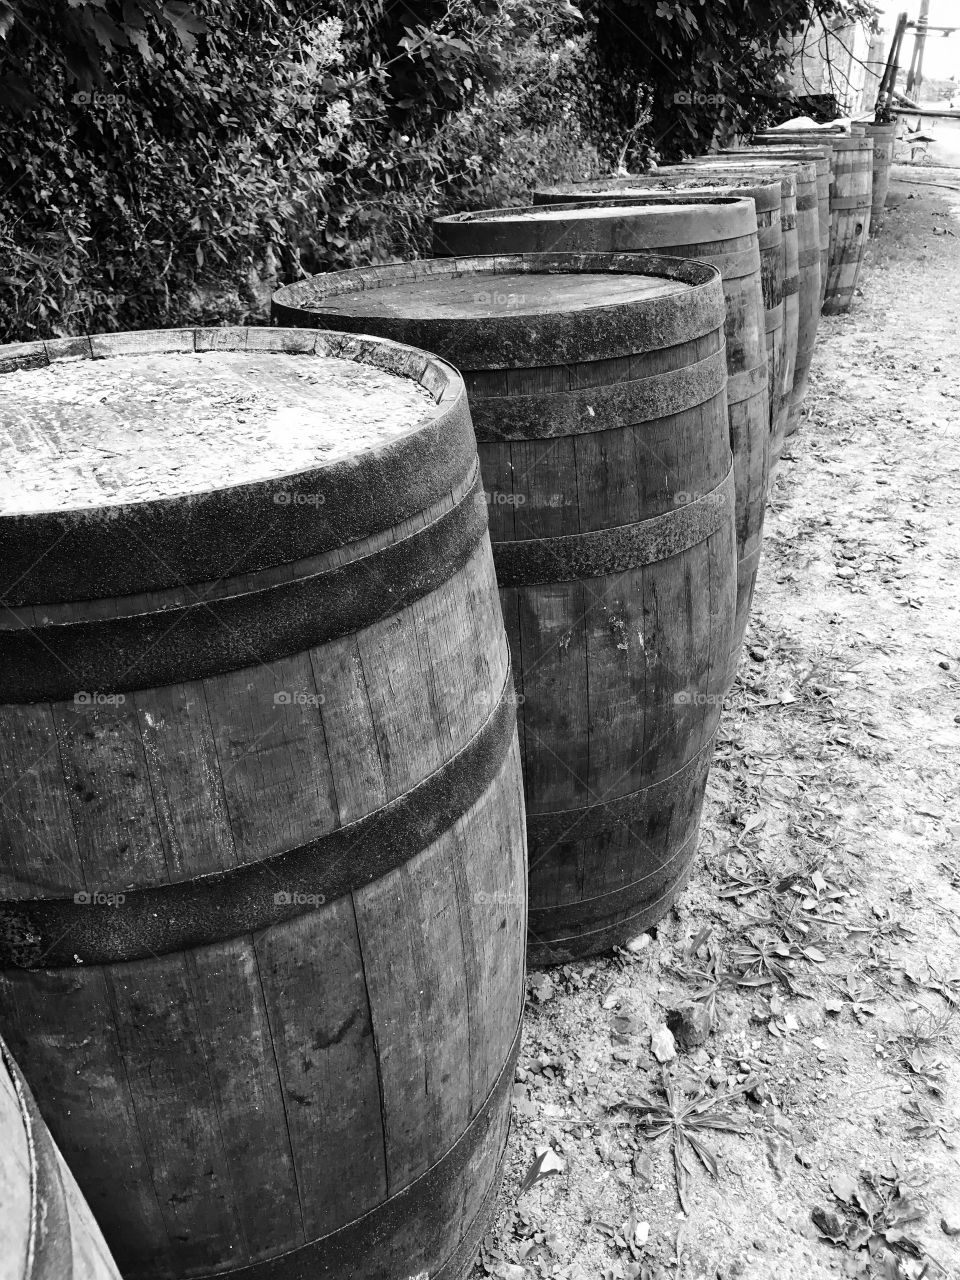 Barrel line up